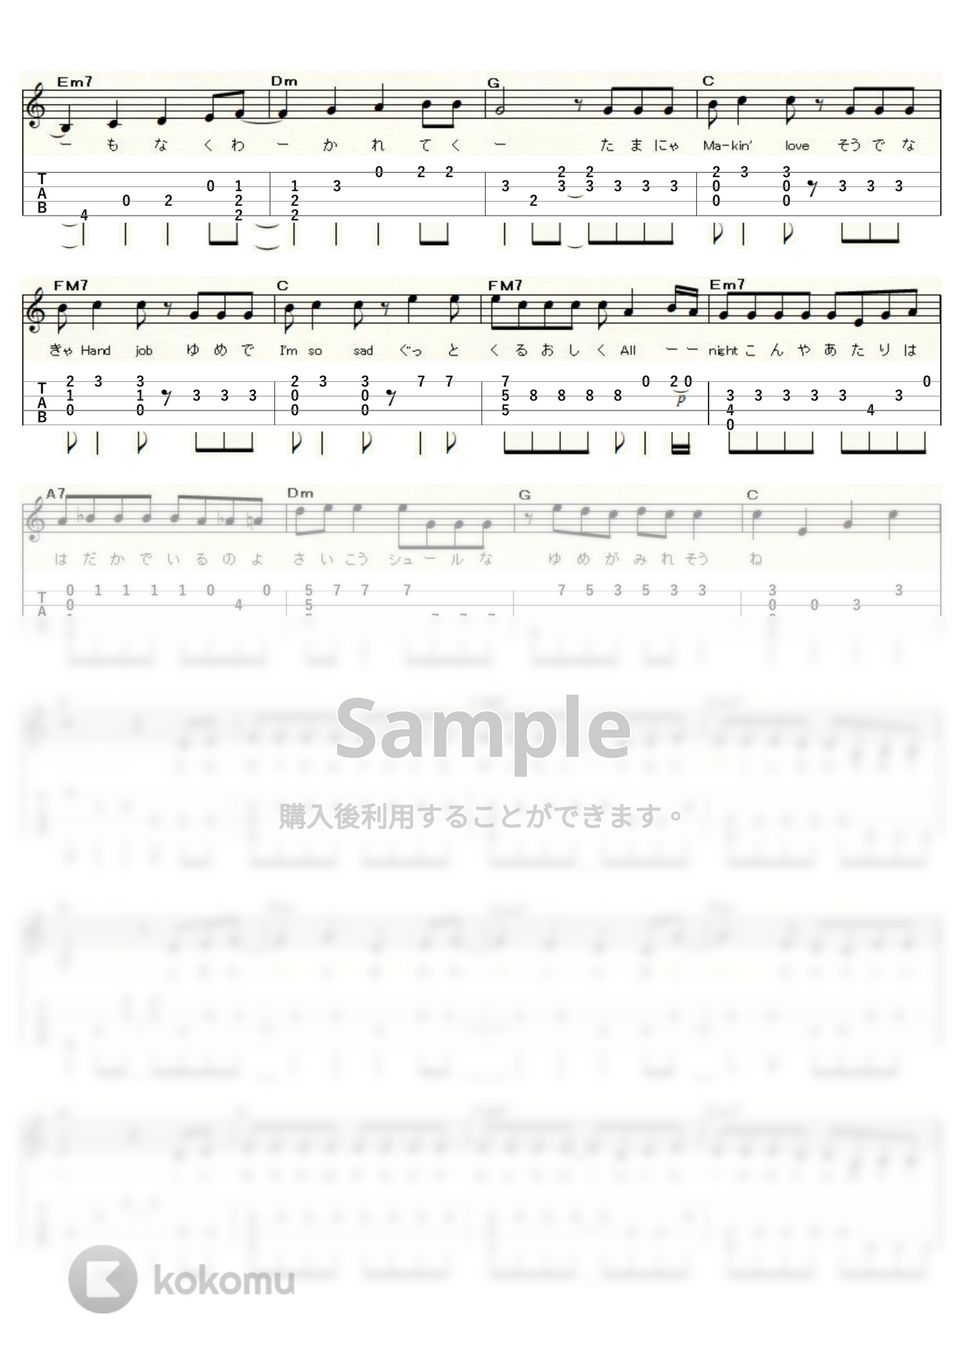 サザンオールスターズ - Ｃ調言葉に御用心 (ｳｸﾚﾚｿﾛ / Low-G / 中級) by ukulelepapa